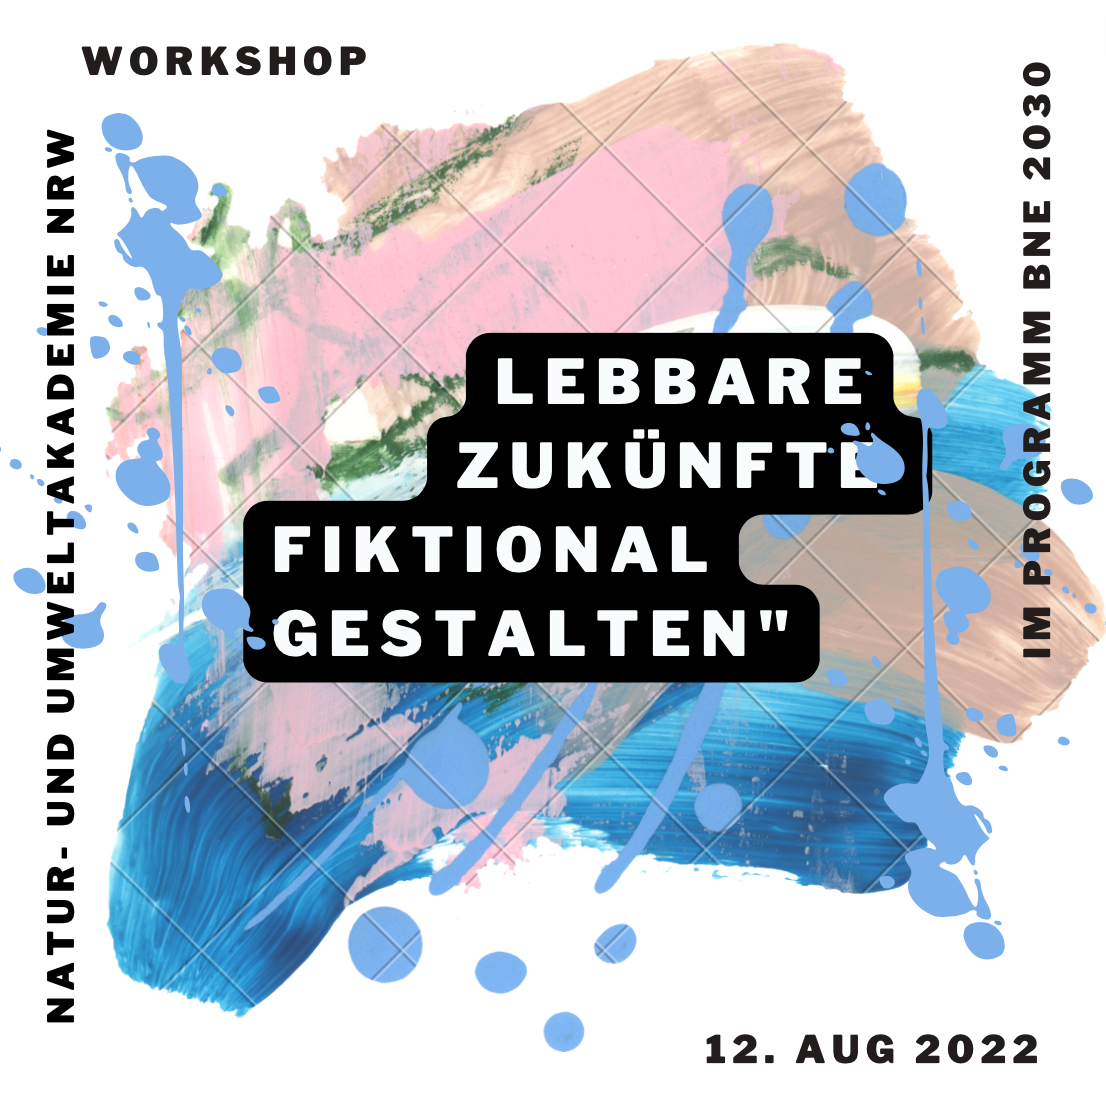 Flyer für den Workshop "Lebbare Zukünfte fiktional gestalten" im Programm "BNE 2030"